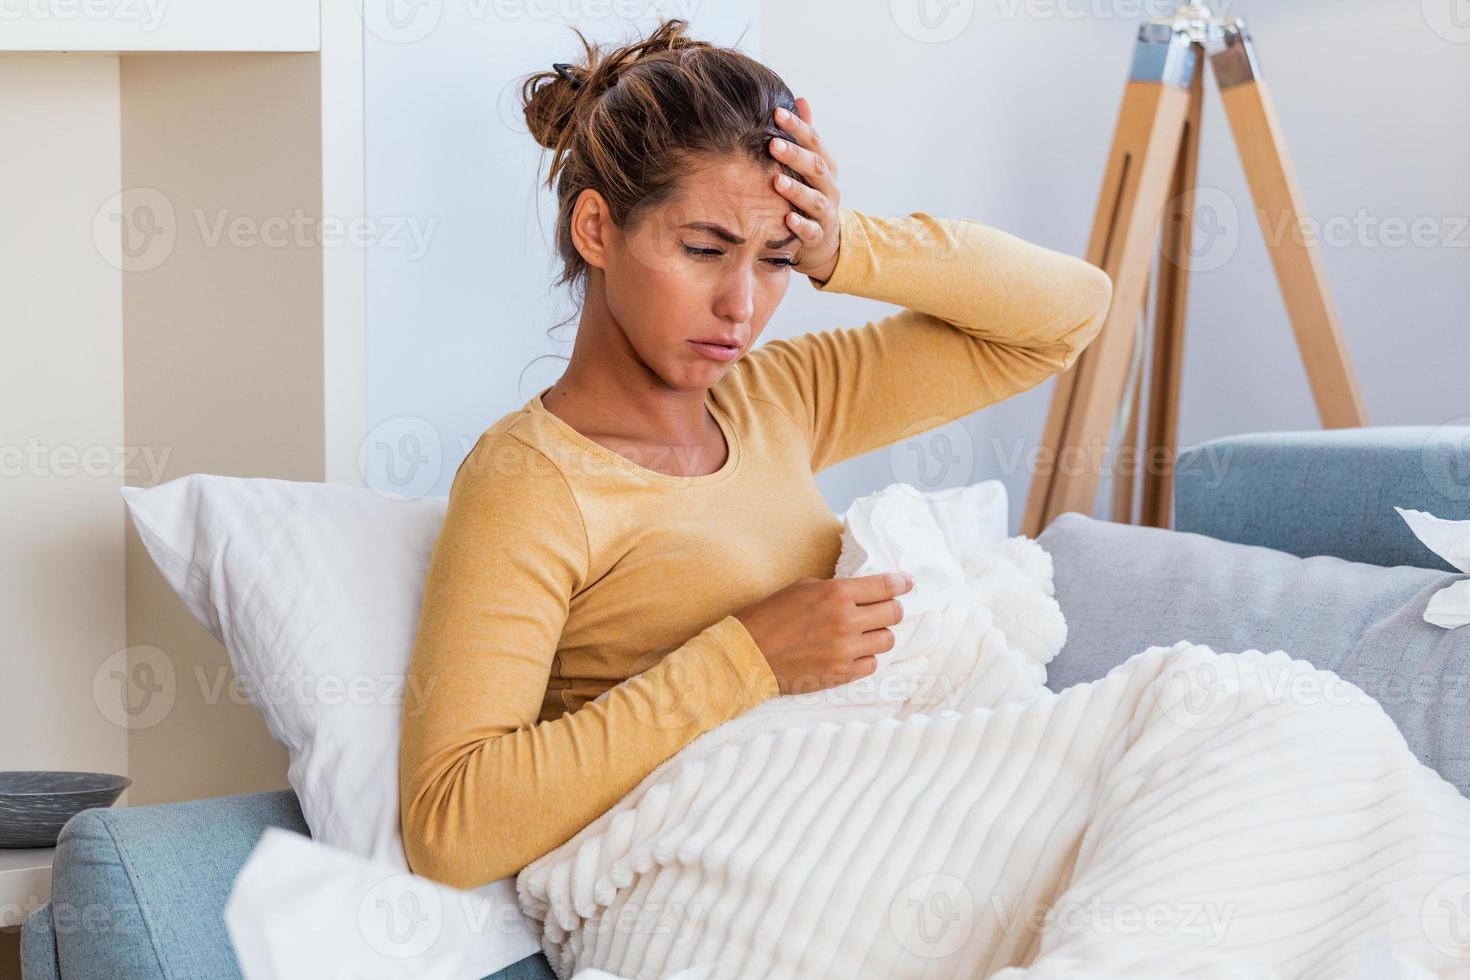 mujer enferma con dolor de cabeza sentada debajo de la manta. mujer enferma con infecciones estacionales, gripe, alergia acostada en la cama. mujer enferma cubierta con una manta acostada en la cama con fiebre alta y gripe, descansando. foto